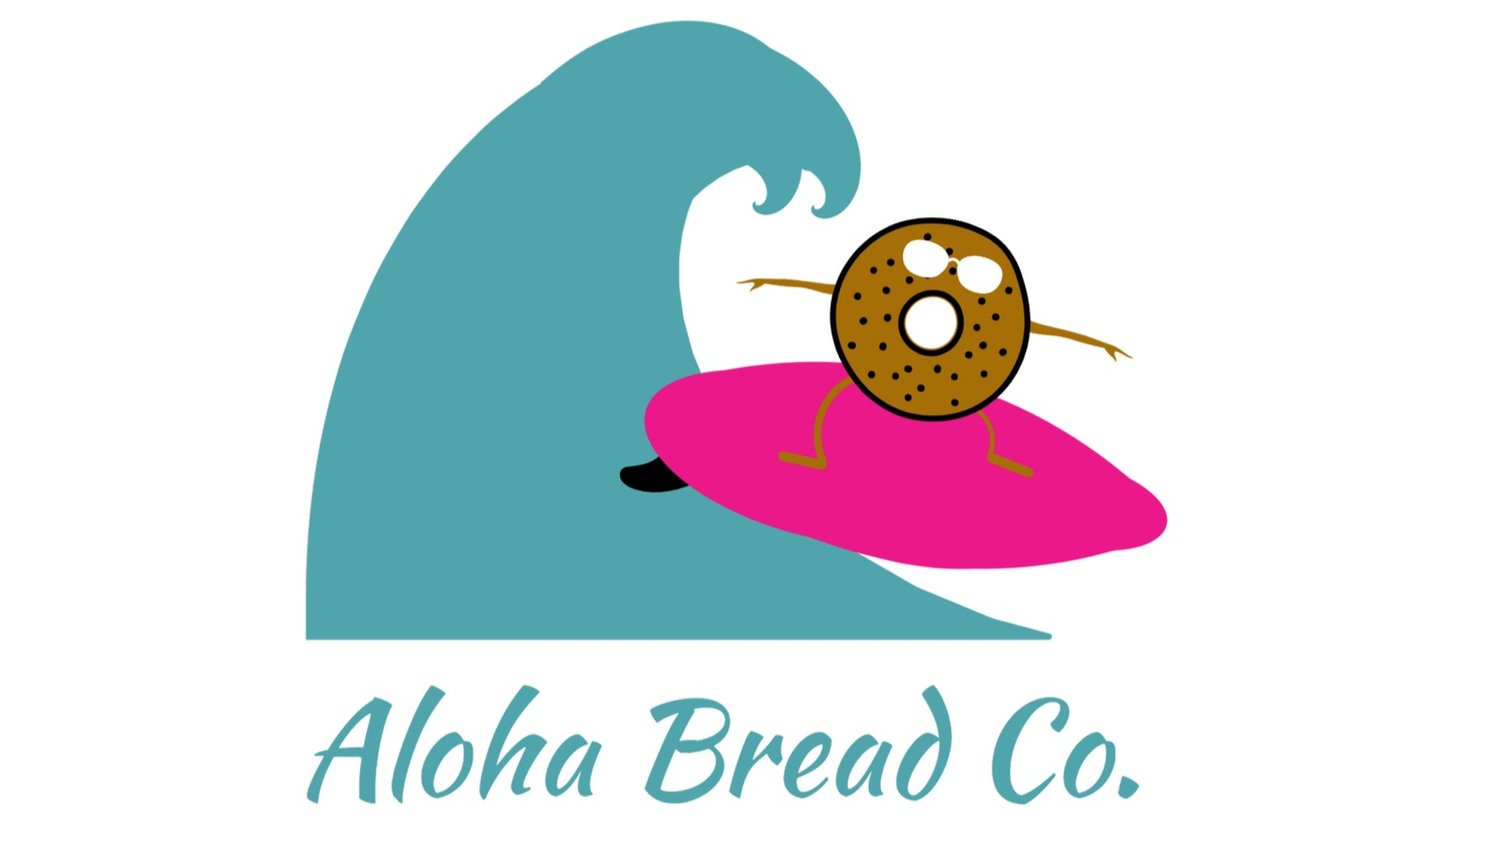 Aloha Bread Co